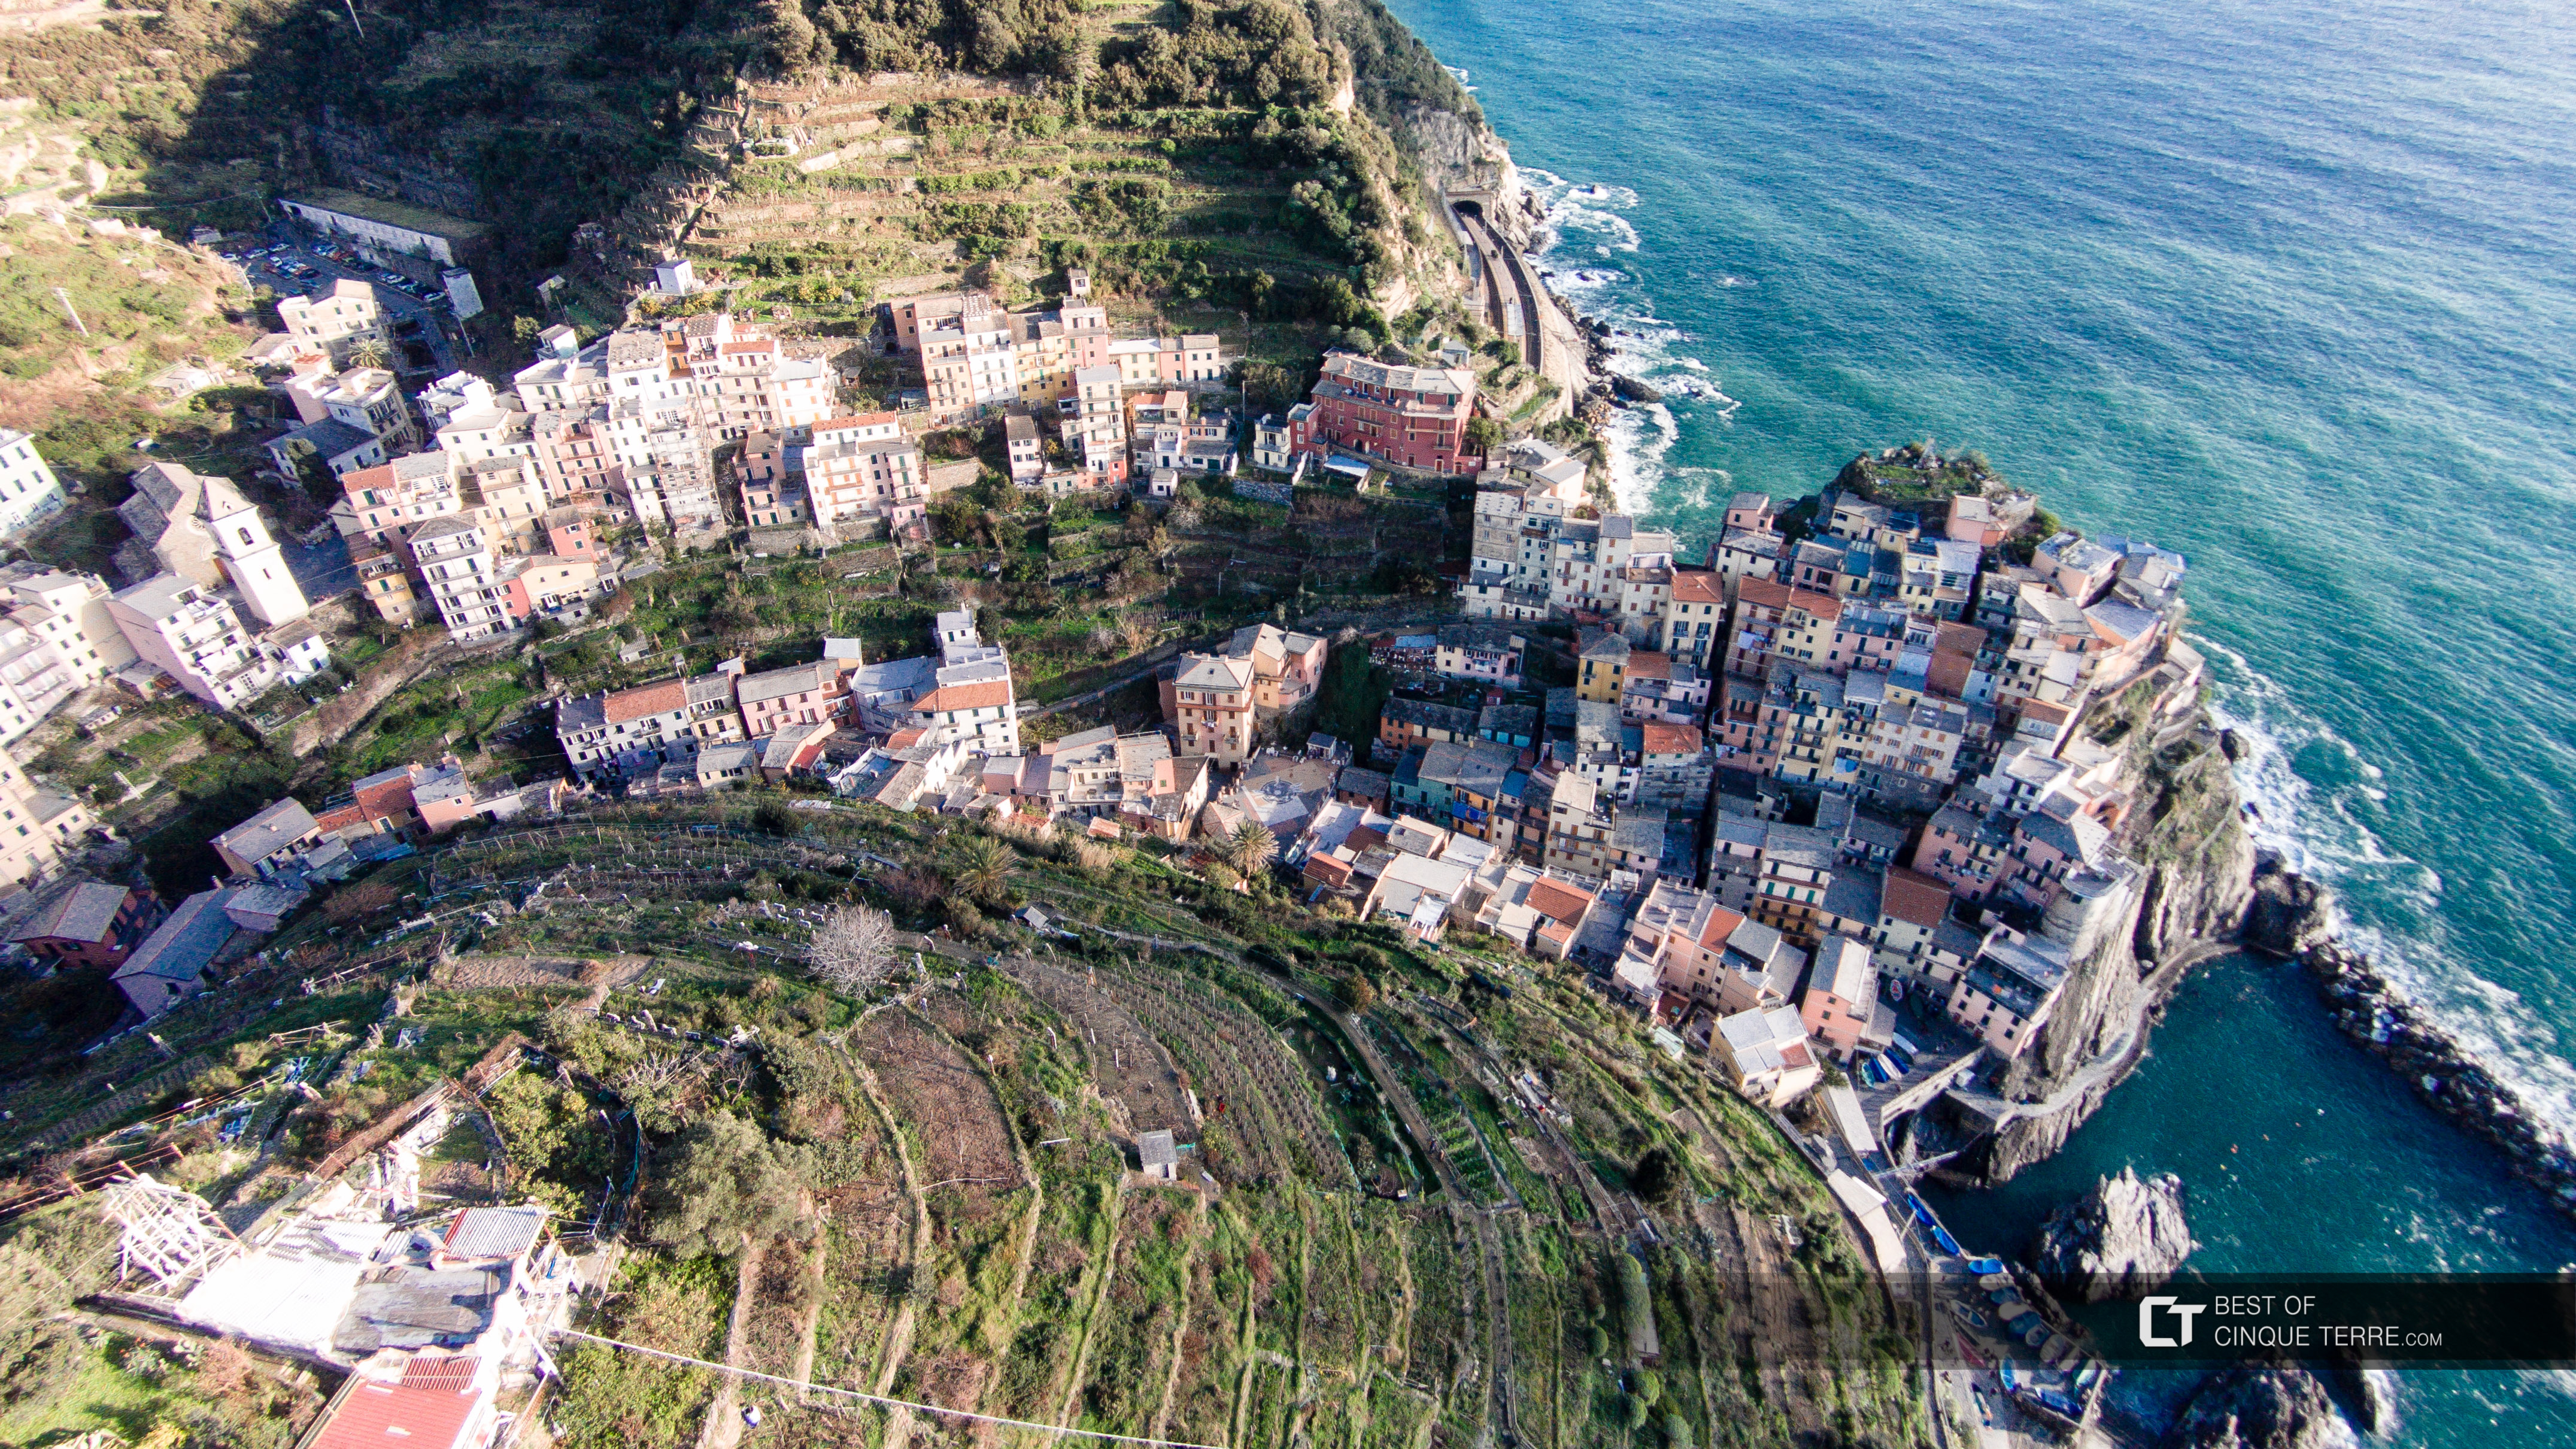 Aerial view of the village, Manarola, Cinque Terre, Italy